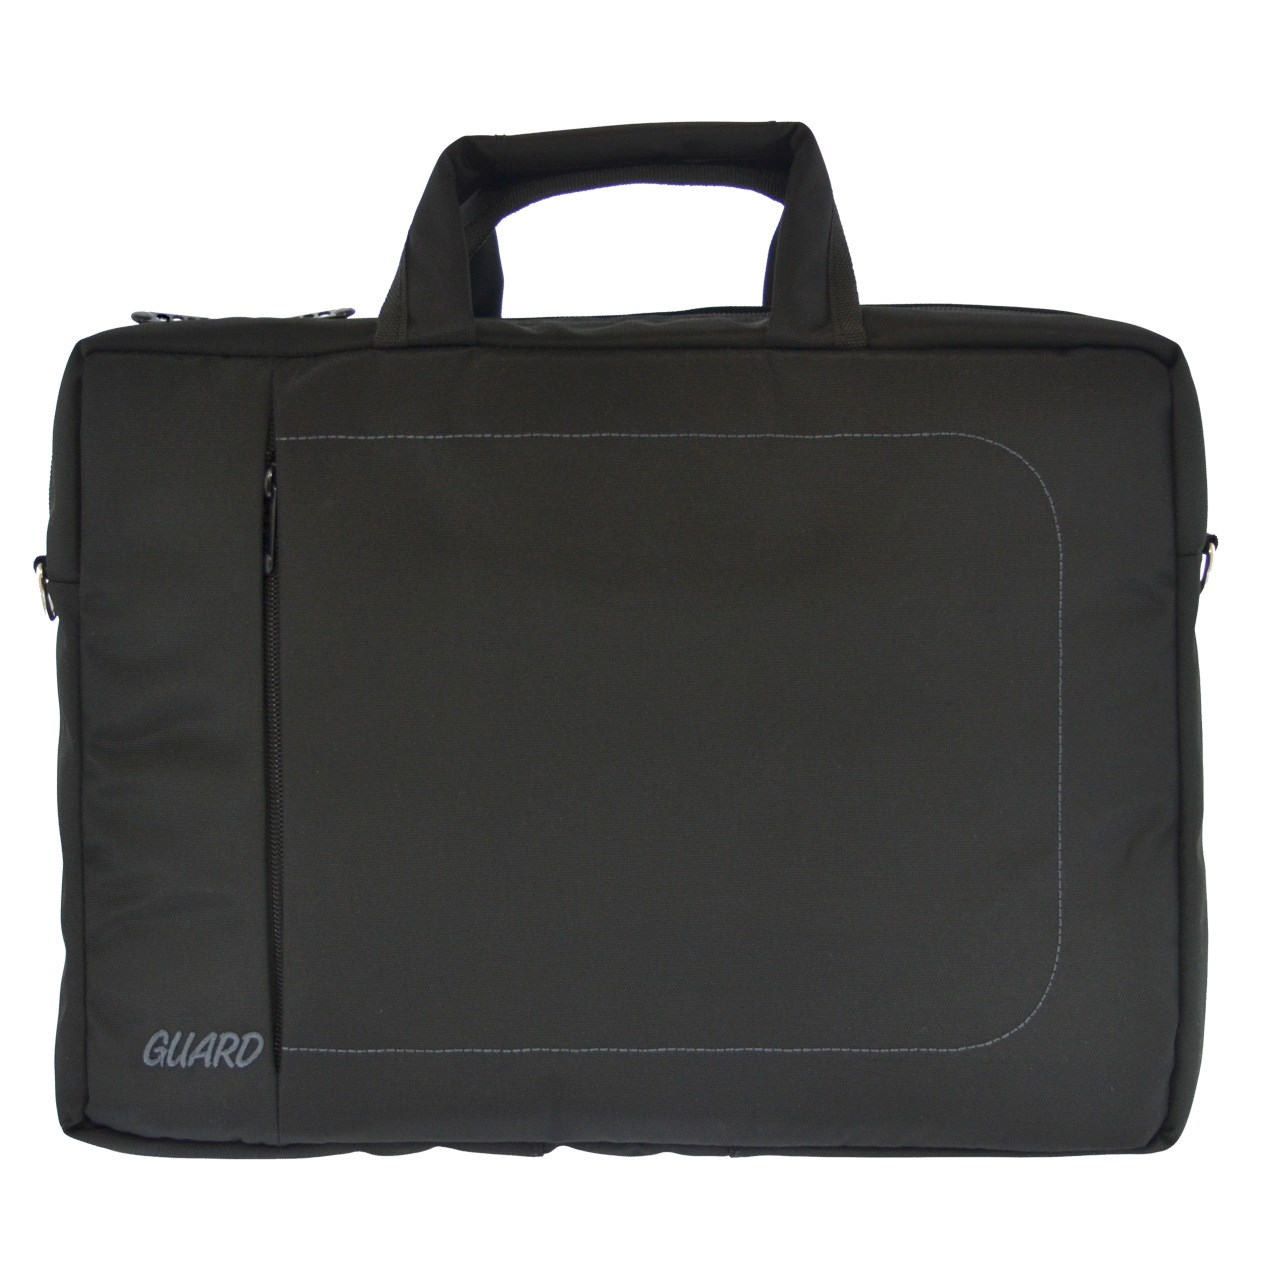 کیف لپ تاپ گارد مدل 358 مناسب برای لپ تاپ 15 اینچی